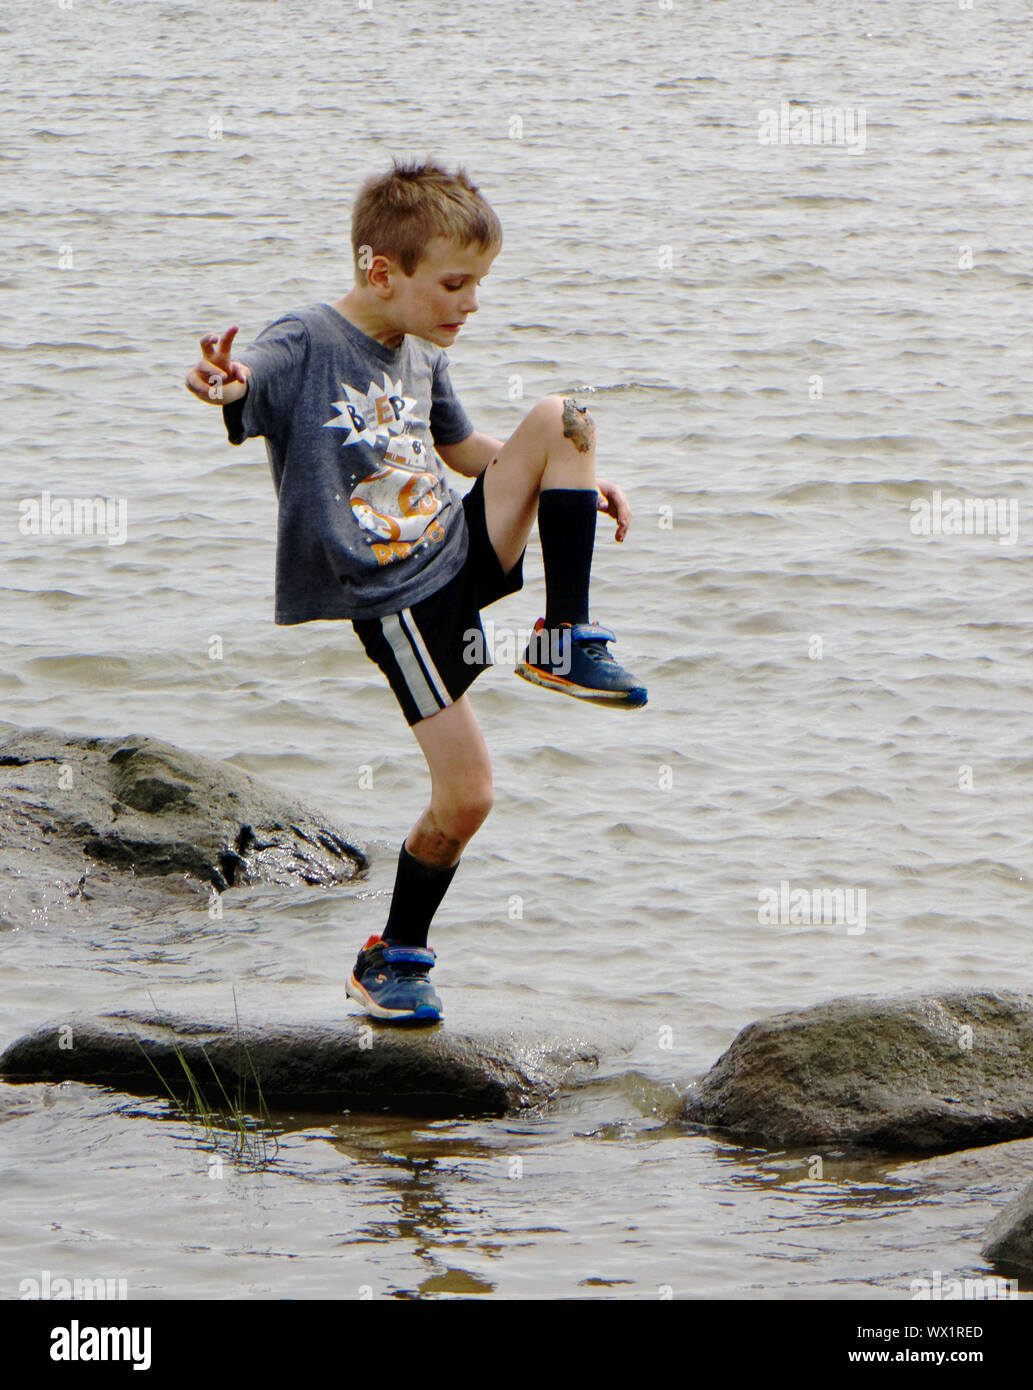 Un joven (7 años) se situó en una pierna mirando el barro sobre su rodilla Foto de stock